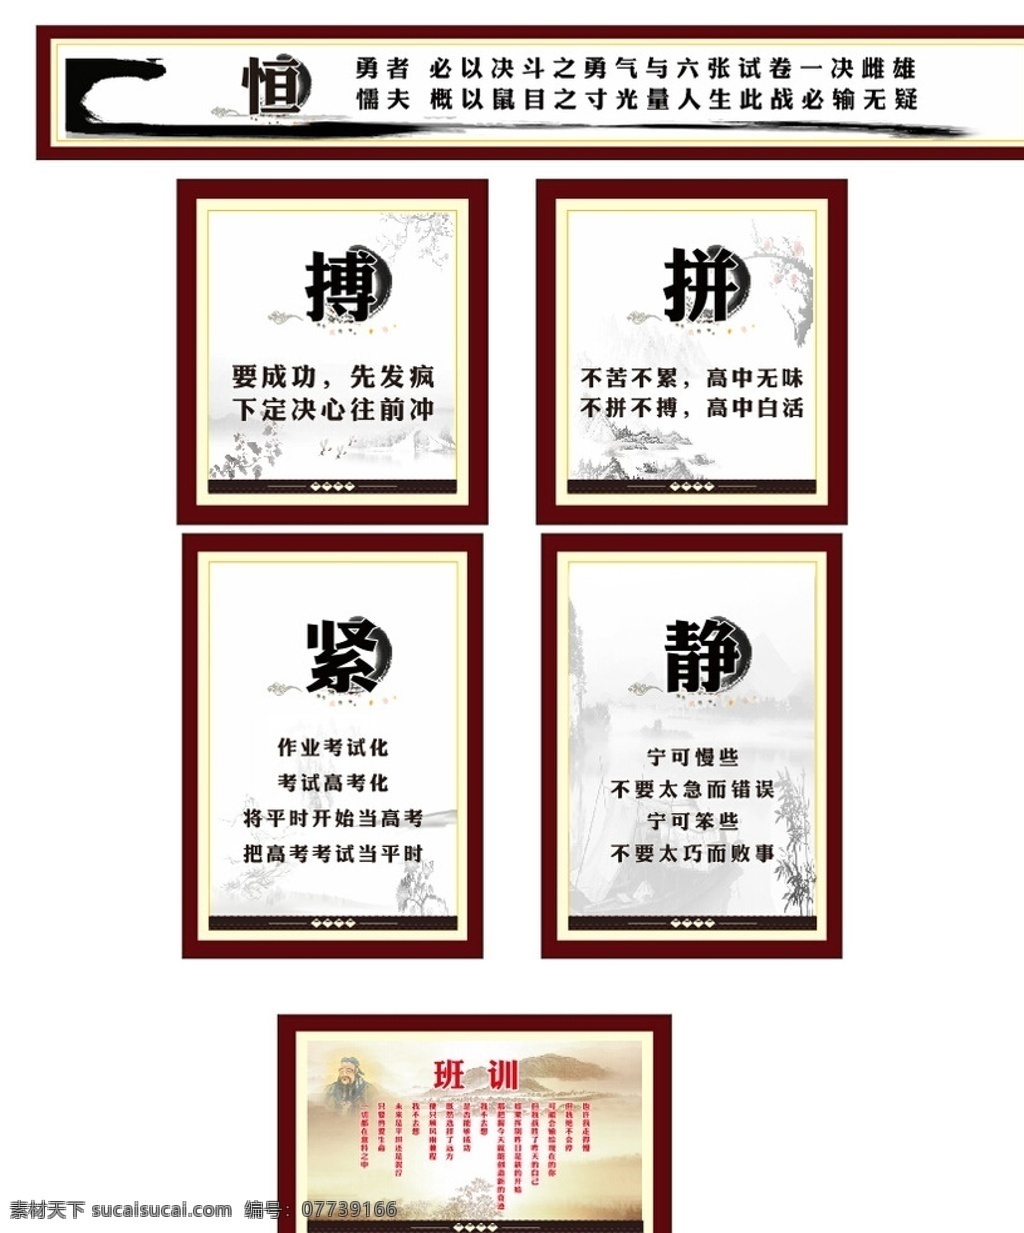 班级展板 班训 校园文化 班级文化 中国风展板 静 拼搏 励志展板 高中班级文化 曲靖开发区 励志标语 展板模板